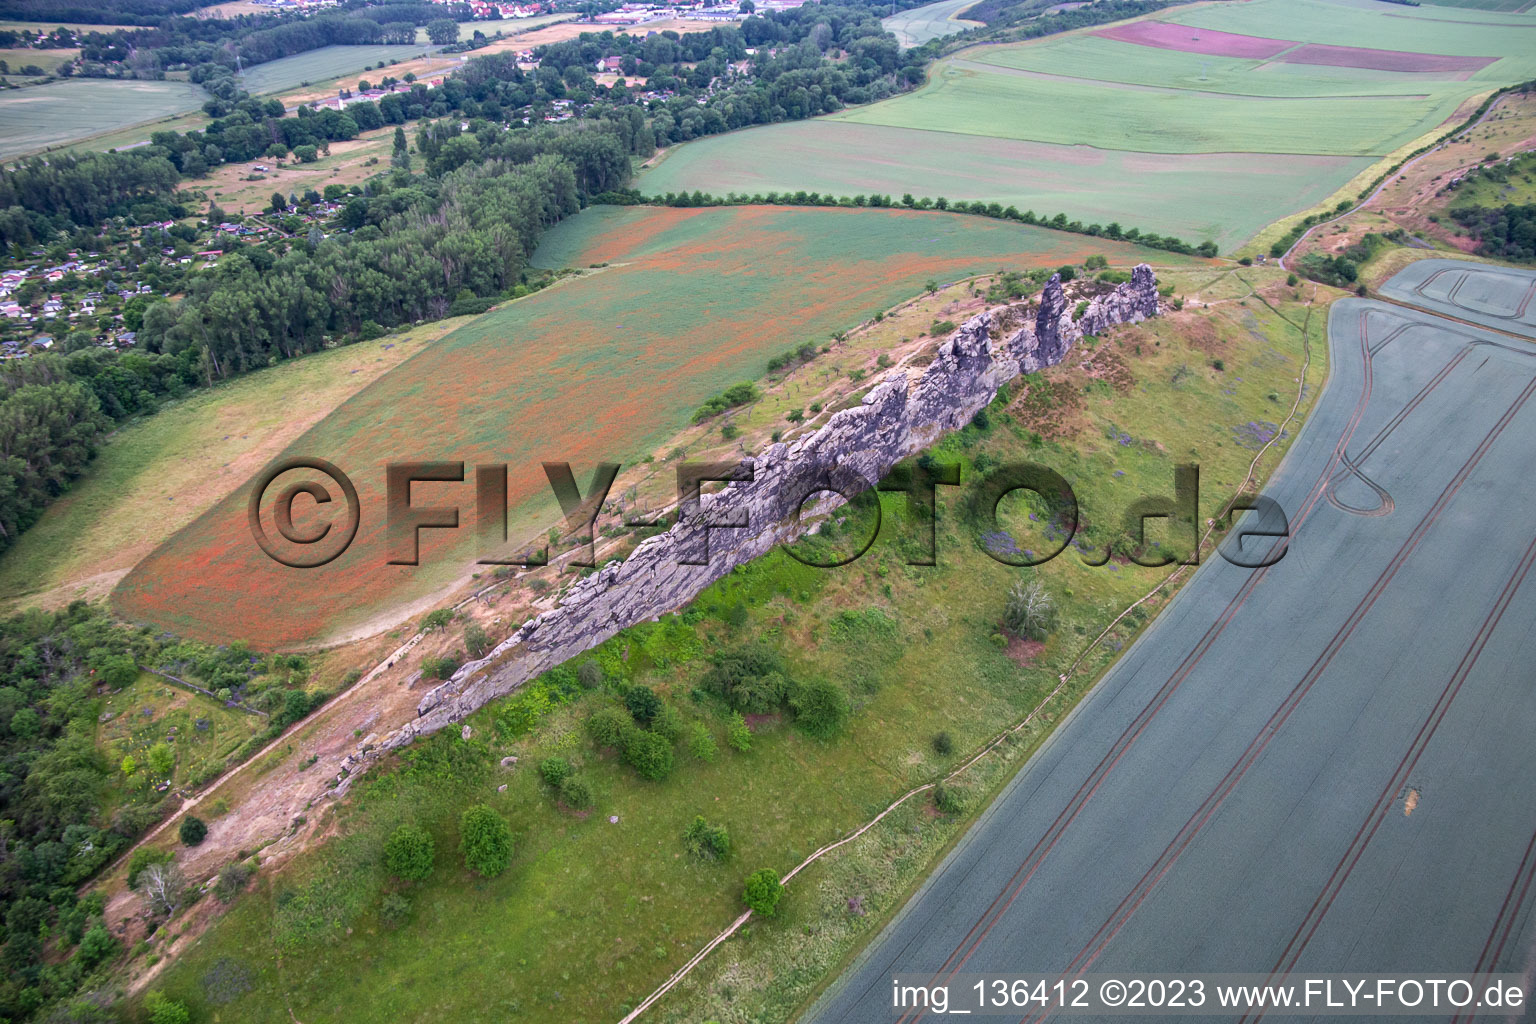 Photographie aérienne de Mur du Diable (Königsstein) à le quartier Weddersleben in Thale dans le département Saxe-Anhalt, Allemagne